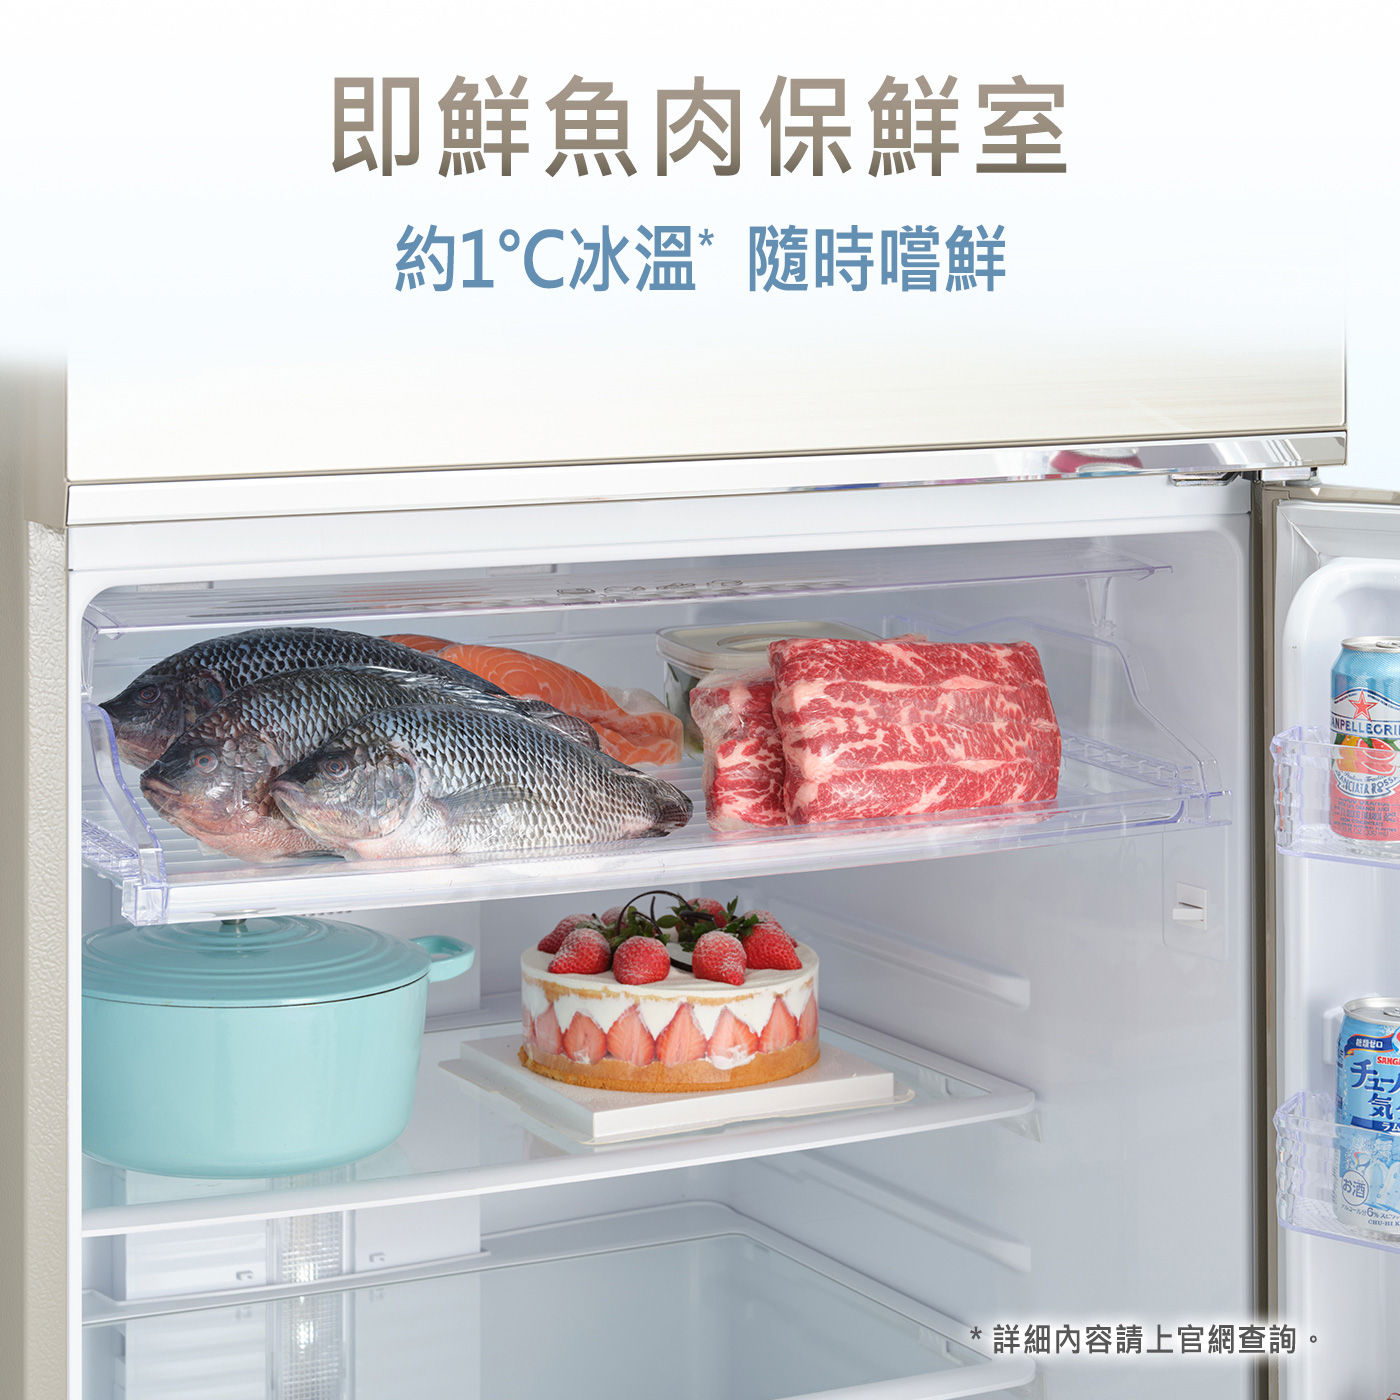 國際牌 650公升 雙門變頻冰箱 NR-B65CV-S即鮮魚肉保鮮室，約1度冰溫隨時嚐鮮